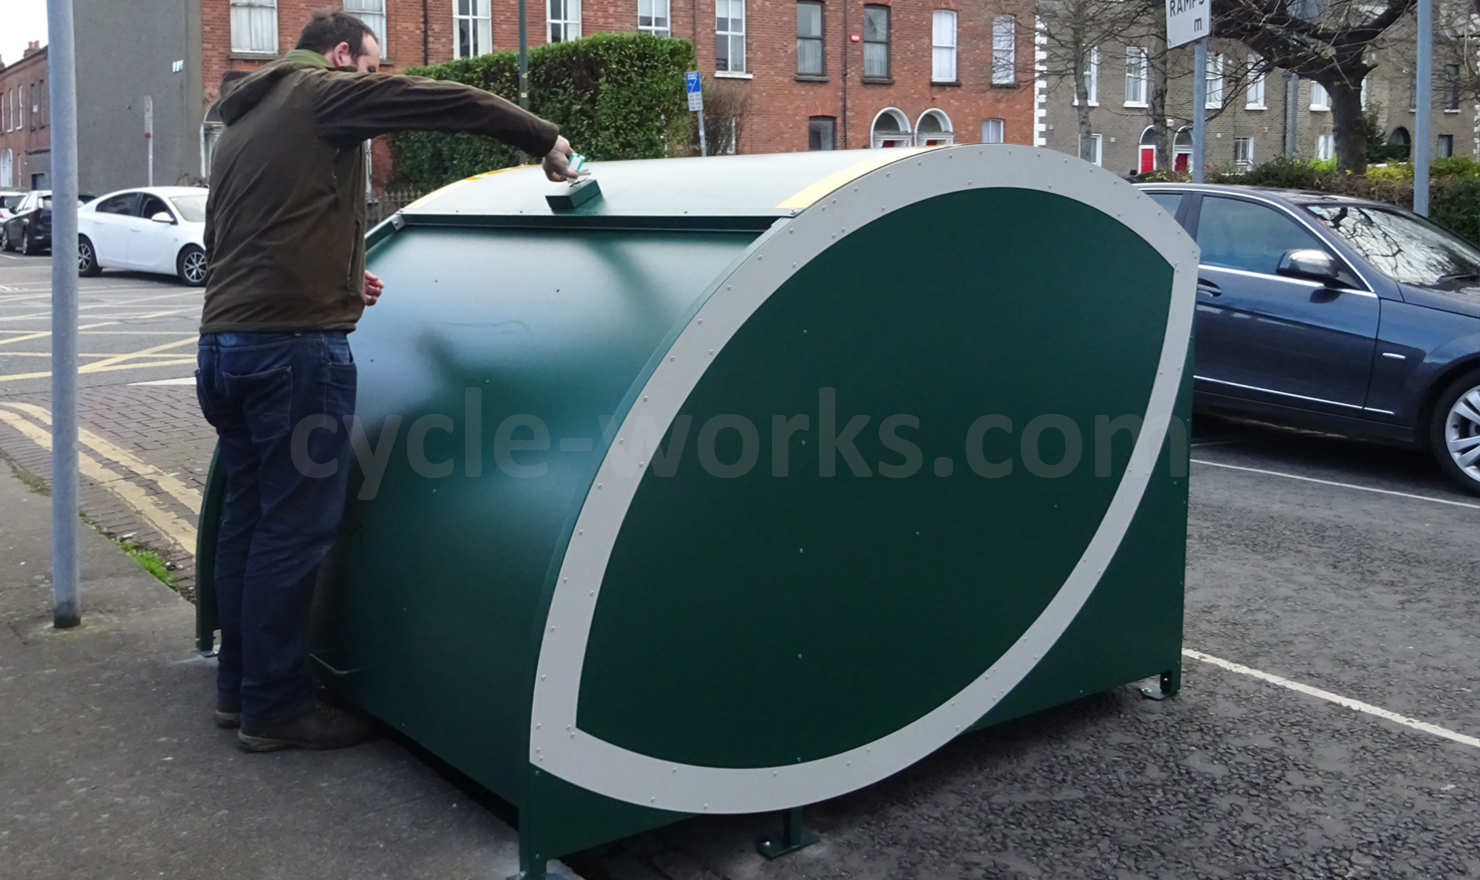 Cycle-Works Velo-Store Multi-Bike Locker on Enmor Street Dublin